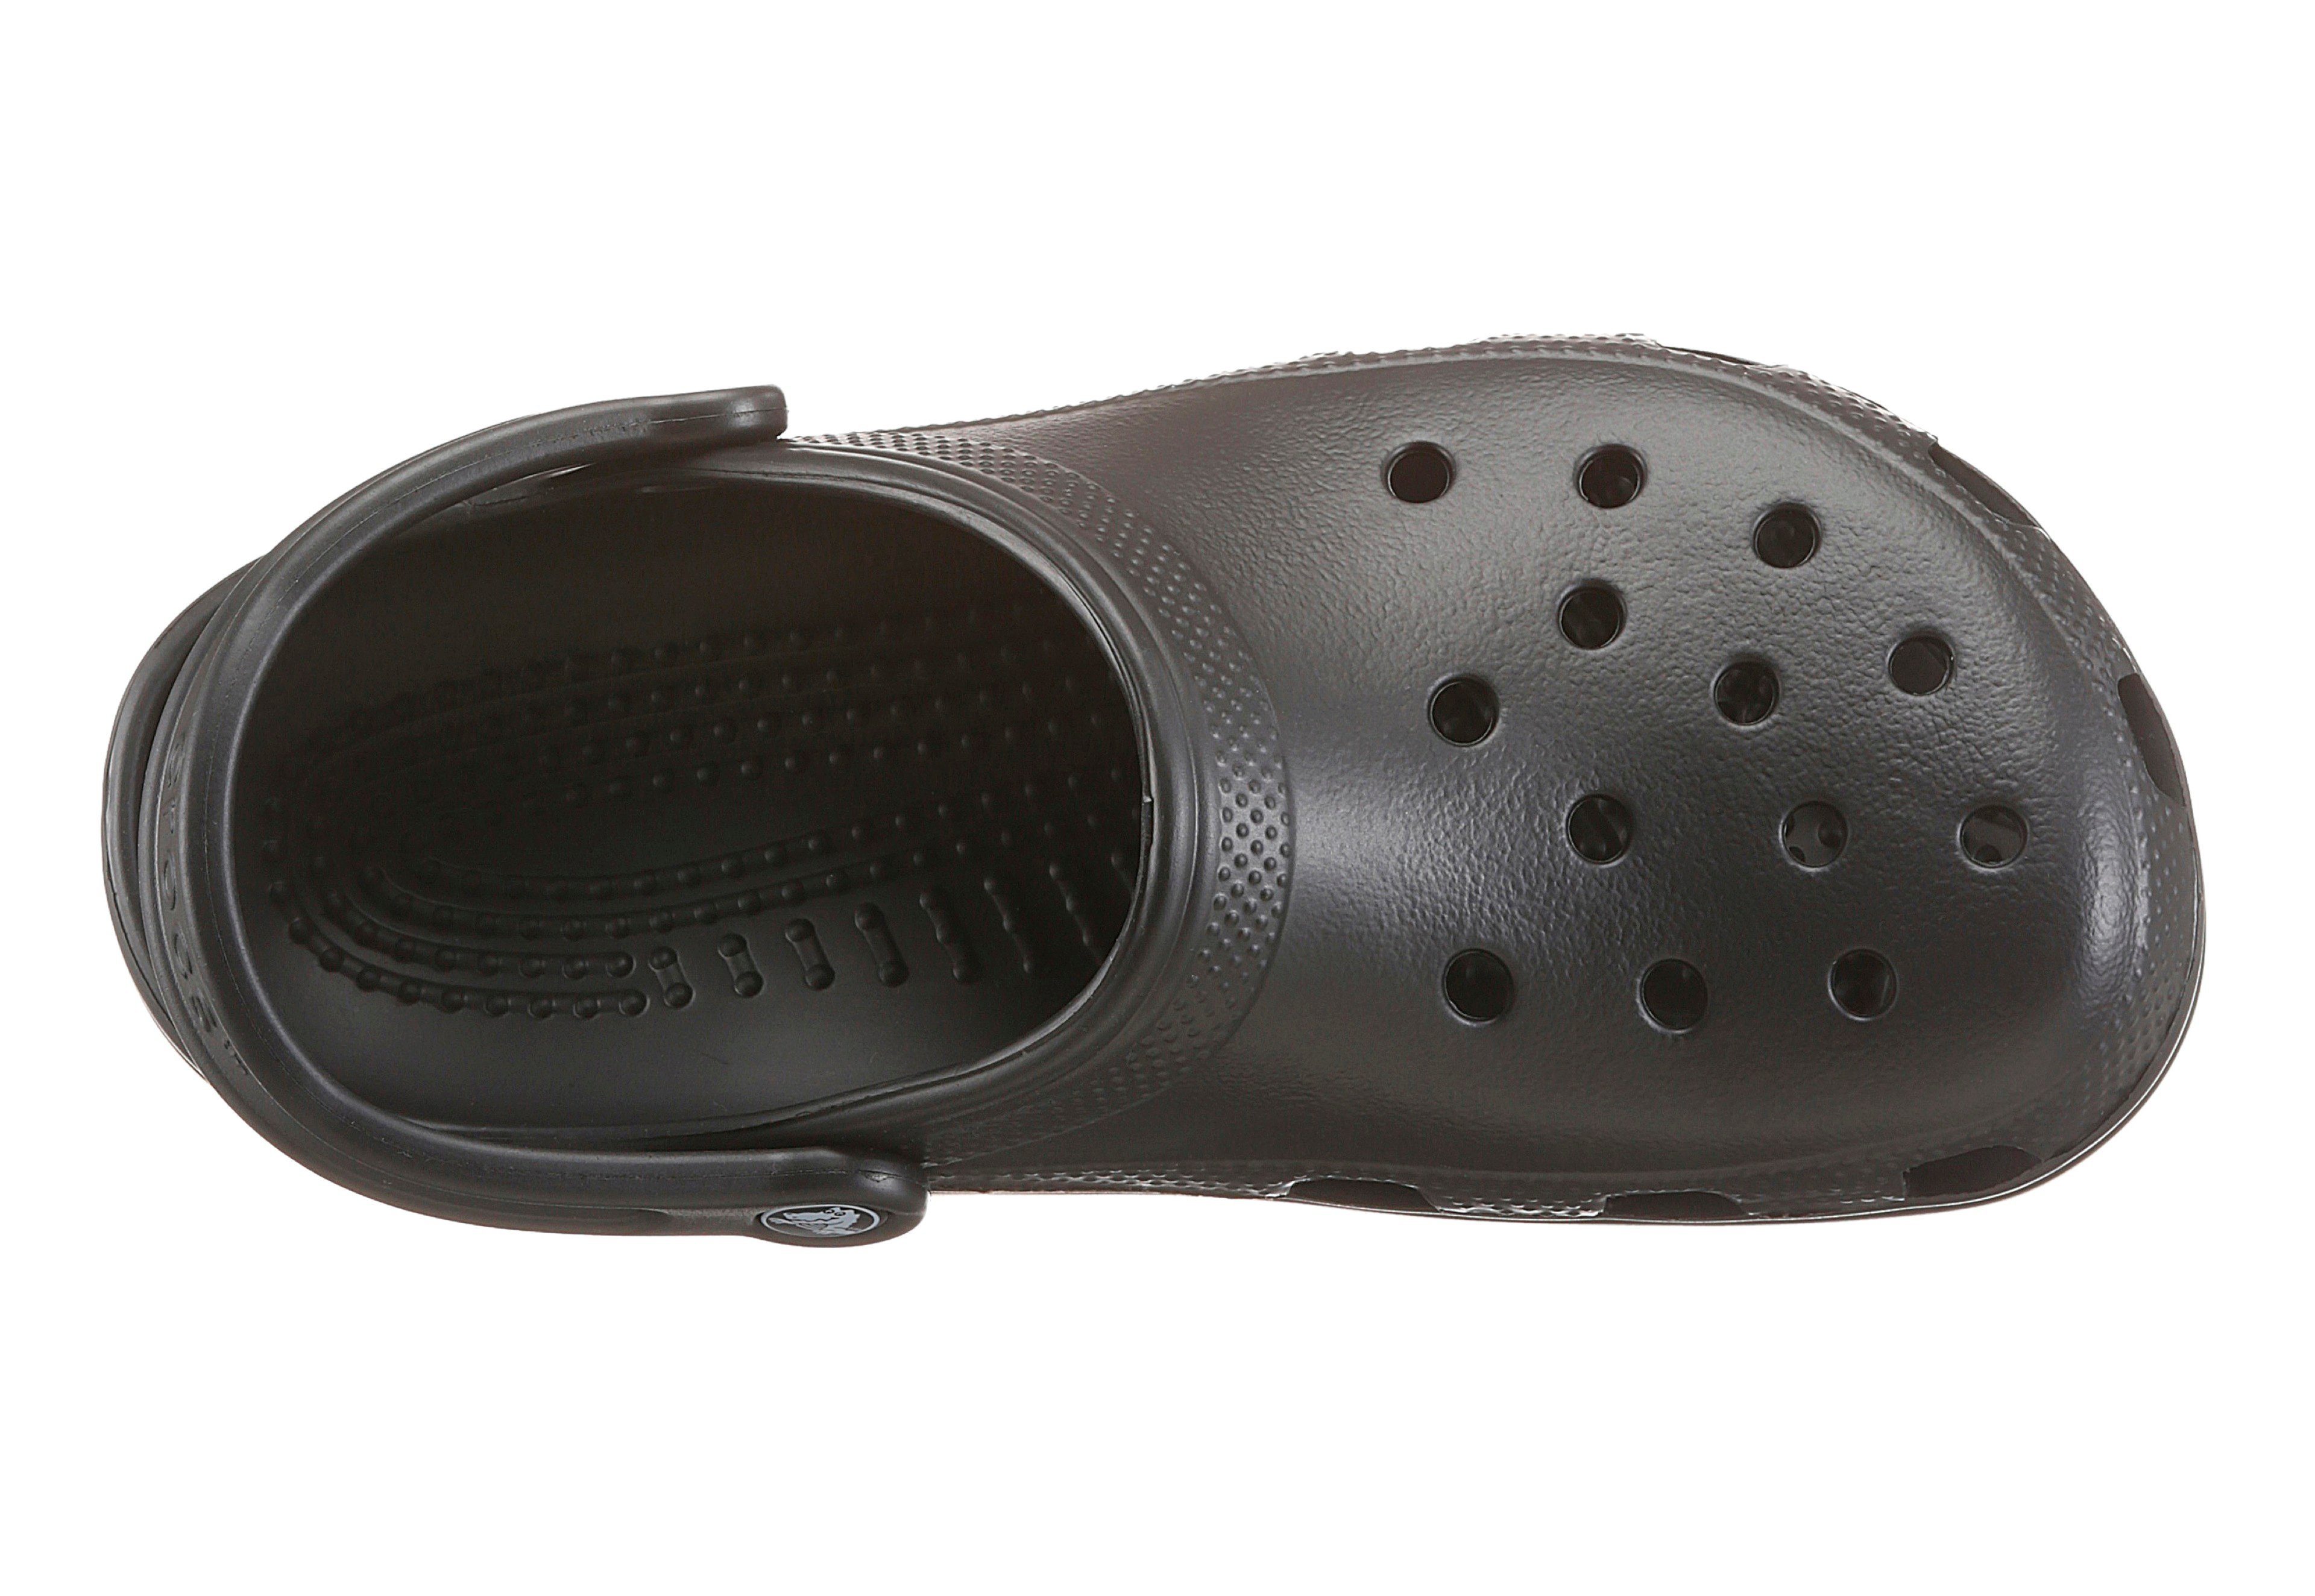 Crocs mit schwarz typischem Classic Clog Logo